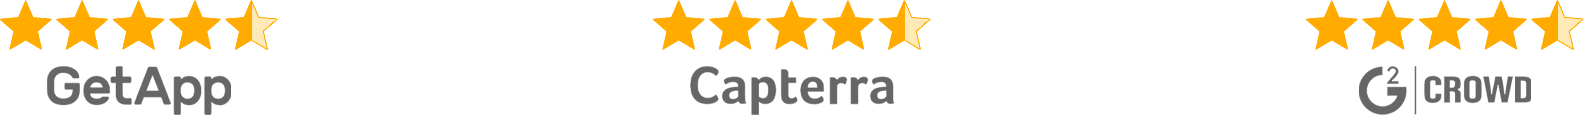 Review site ratings 4.5 stars dark